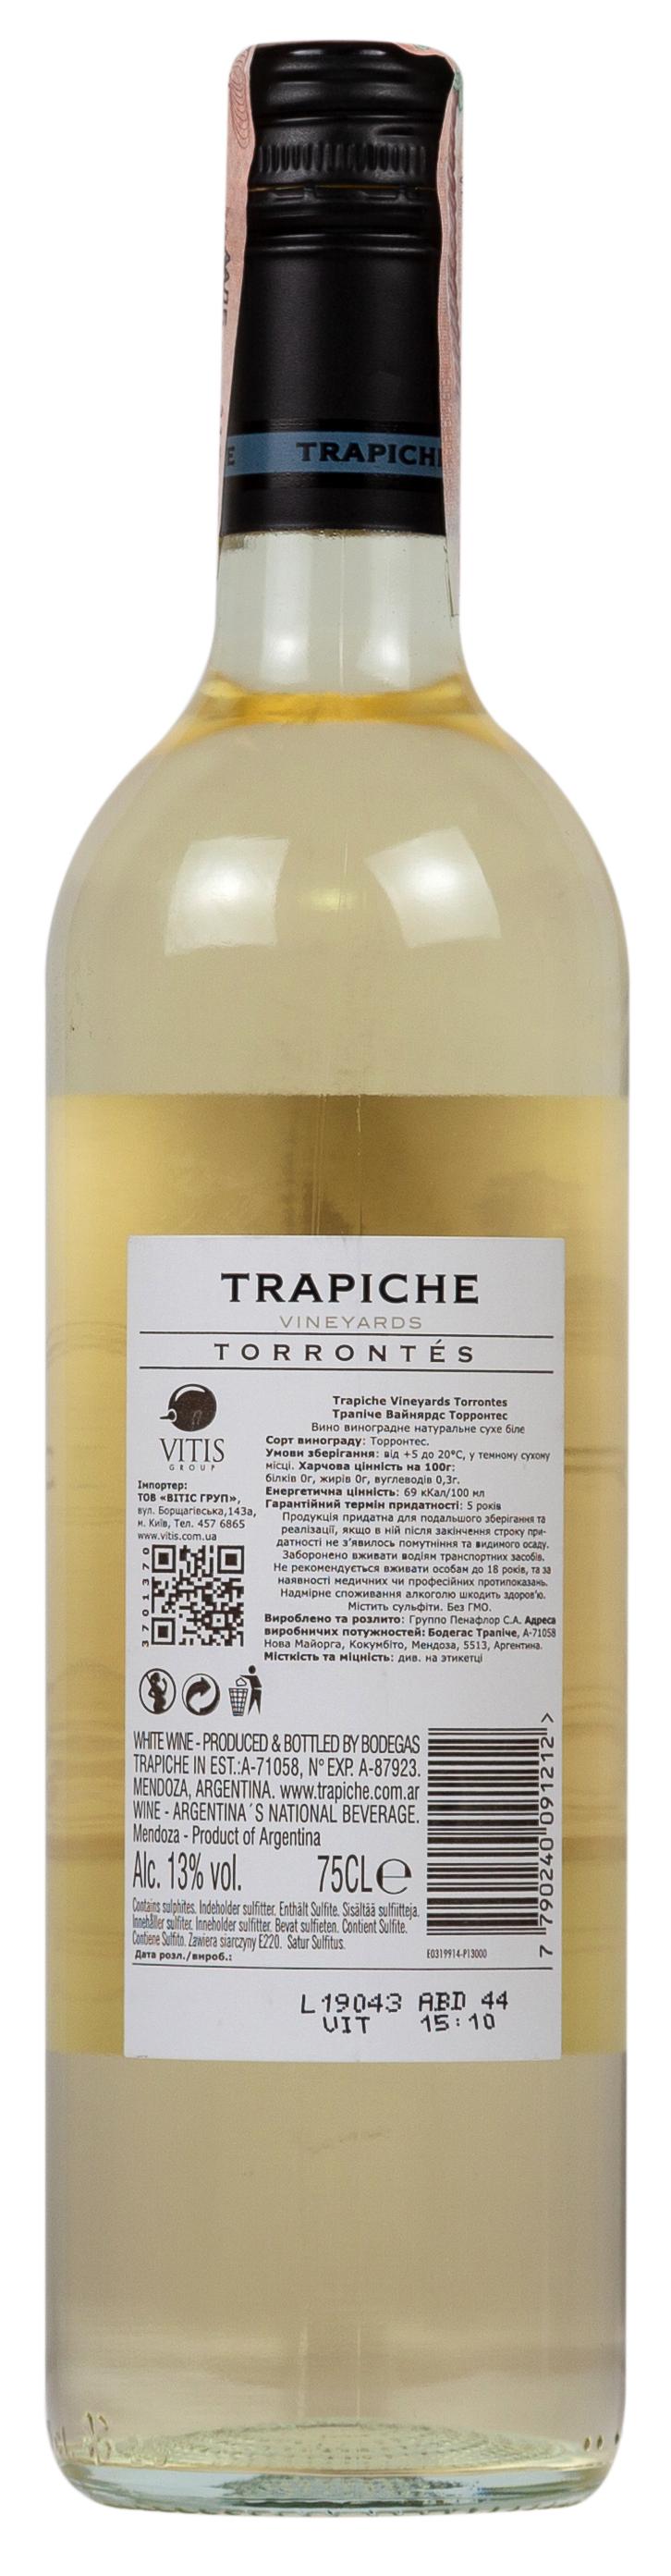 Trapiche Vineyards Torrontes 2018 Set 6 bottles - 2